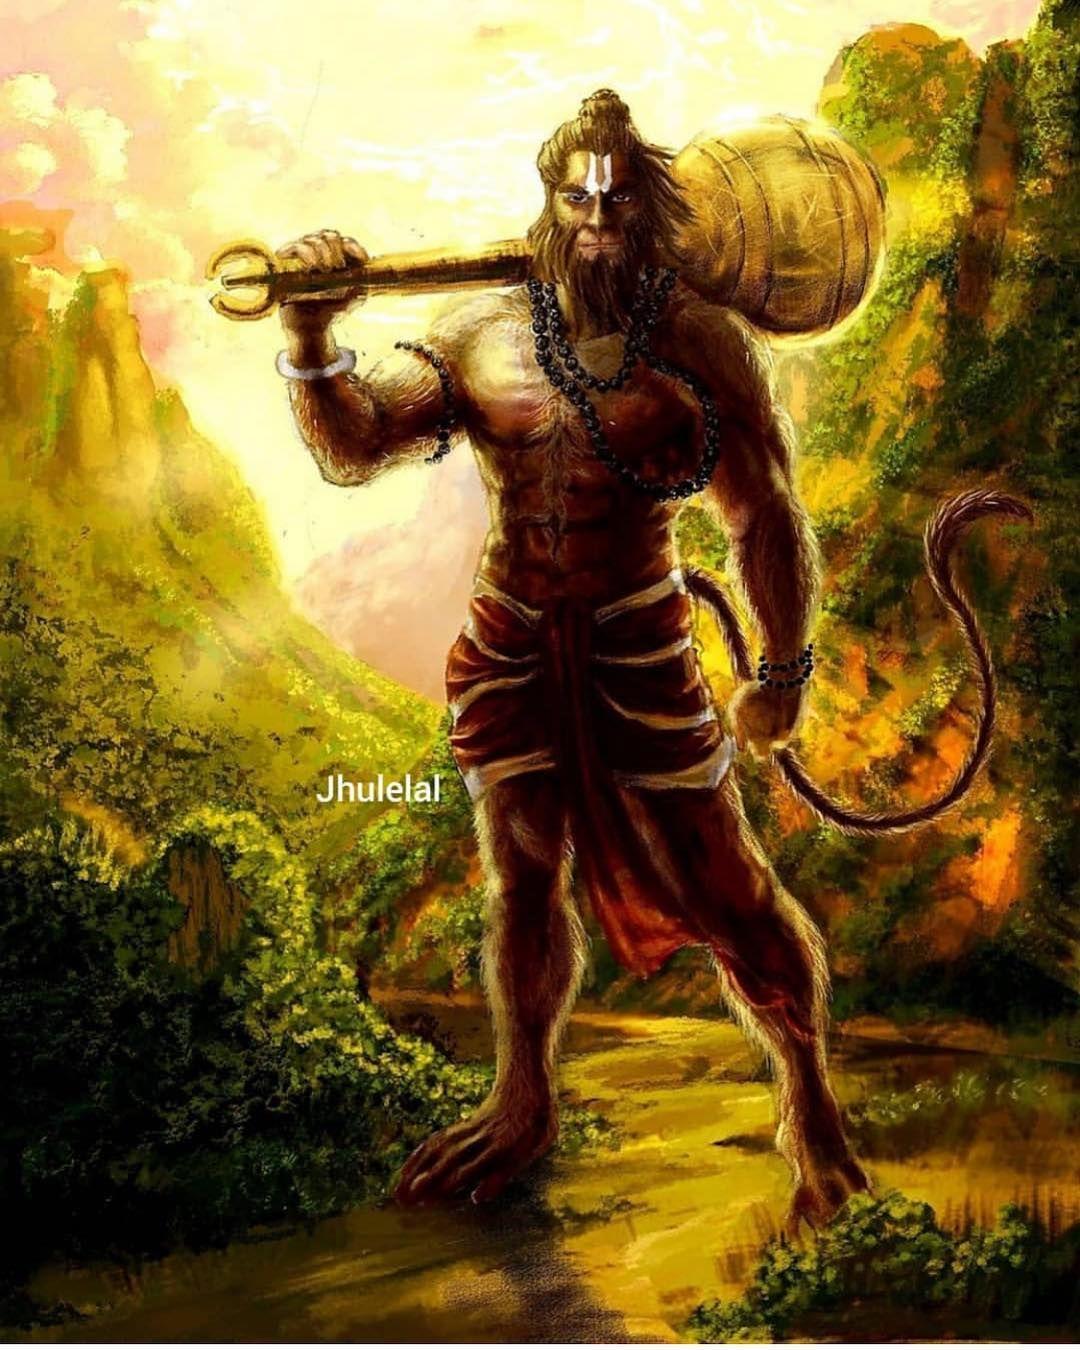 Image may contain: 1 person. Hanuman. Ram hanuman